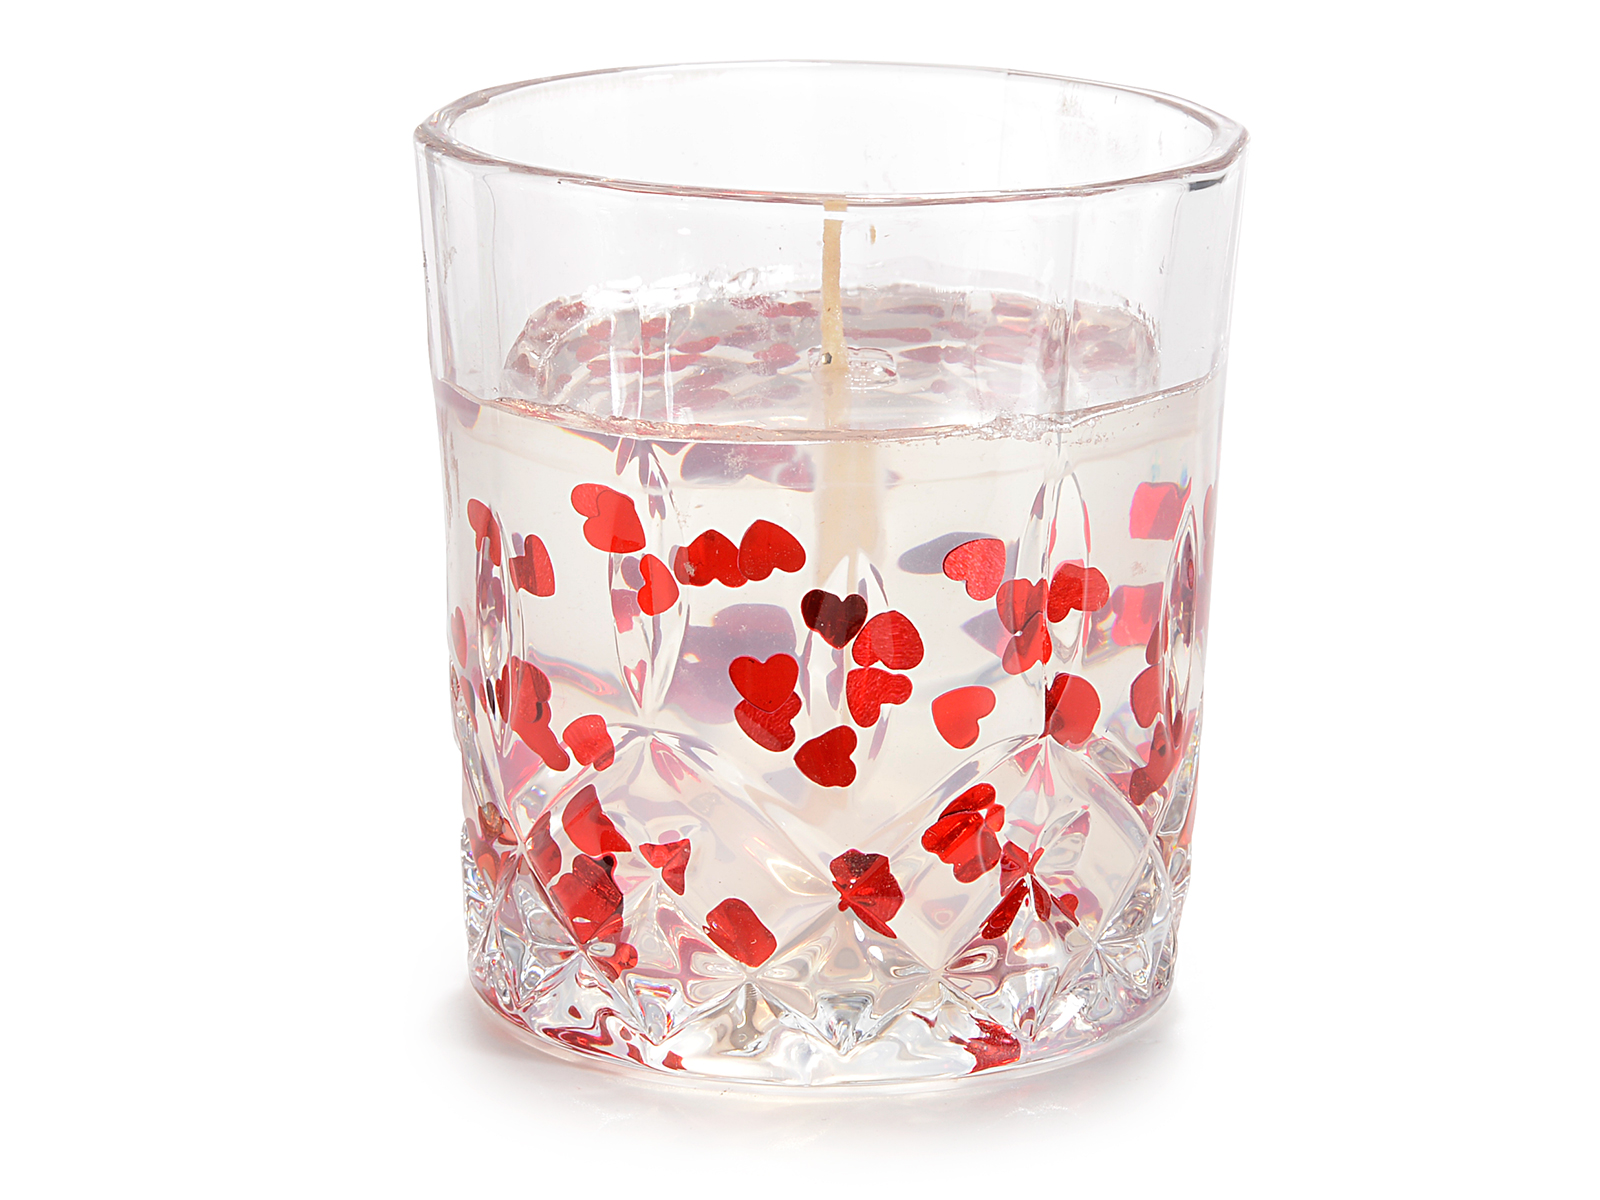 Bougie gel dans un bocal en verre avec des coeurs rouges (14.14.14) - Art  From Italy